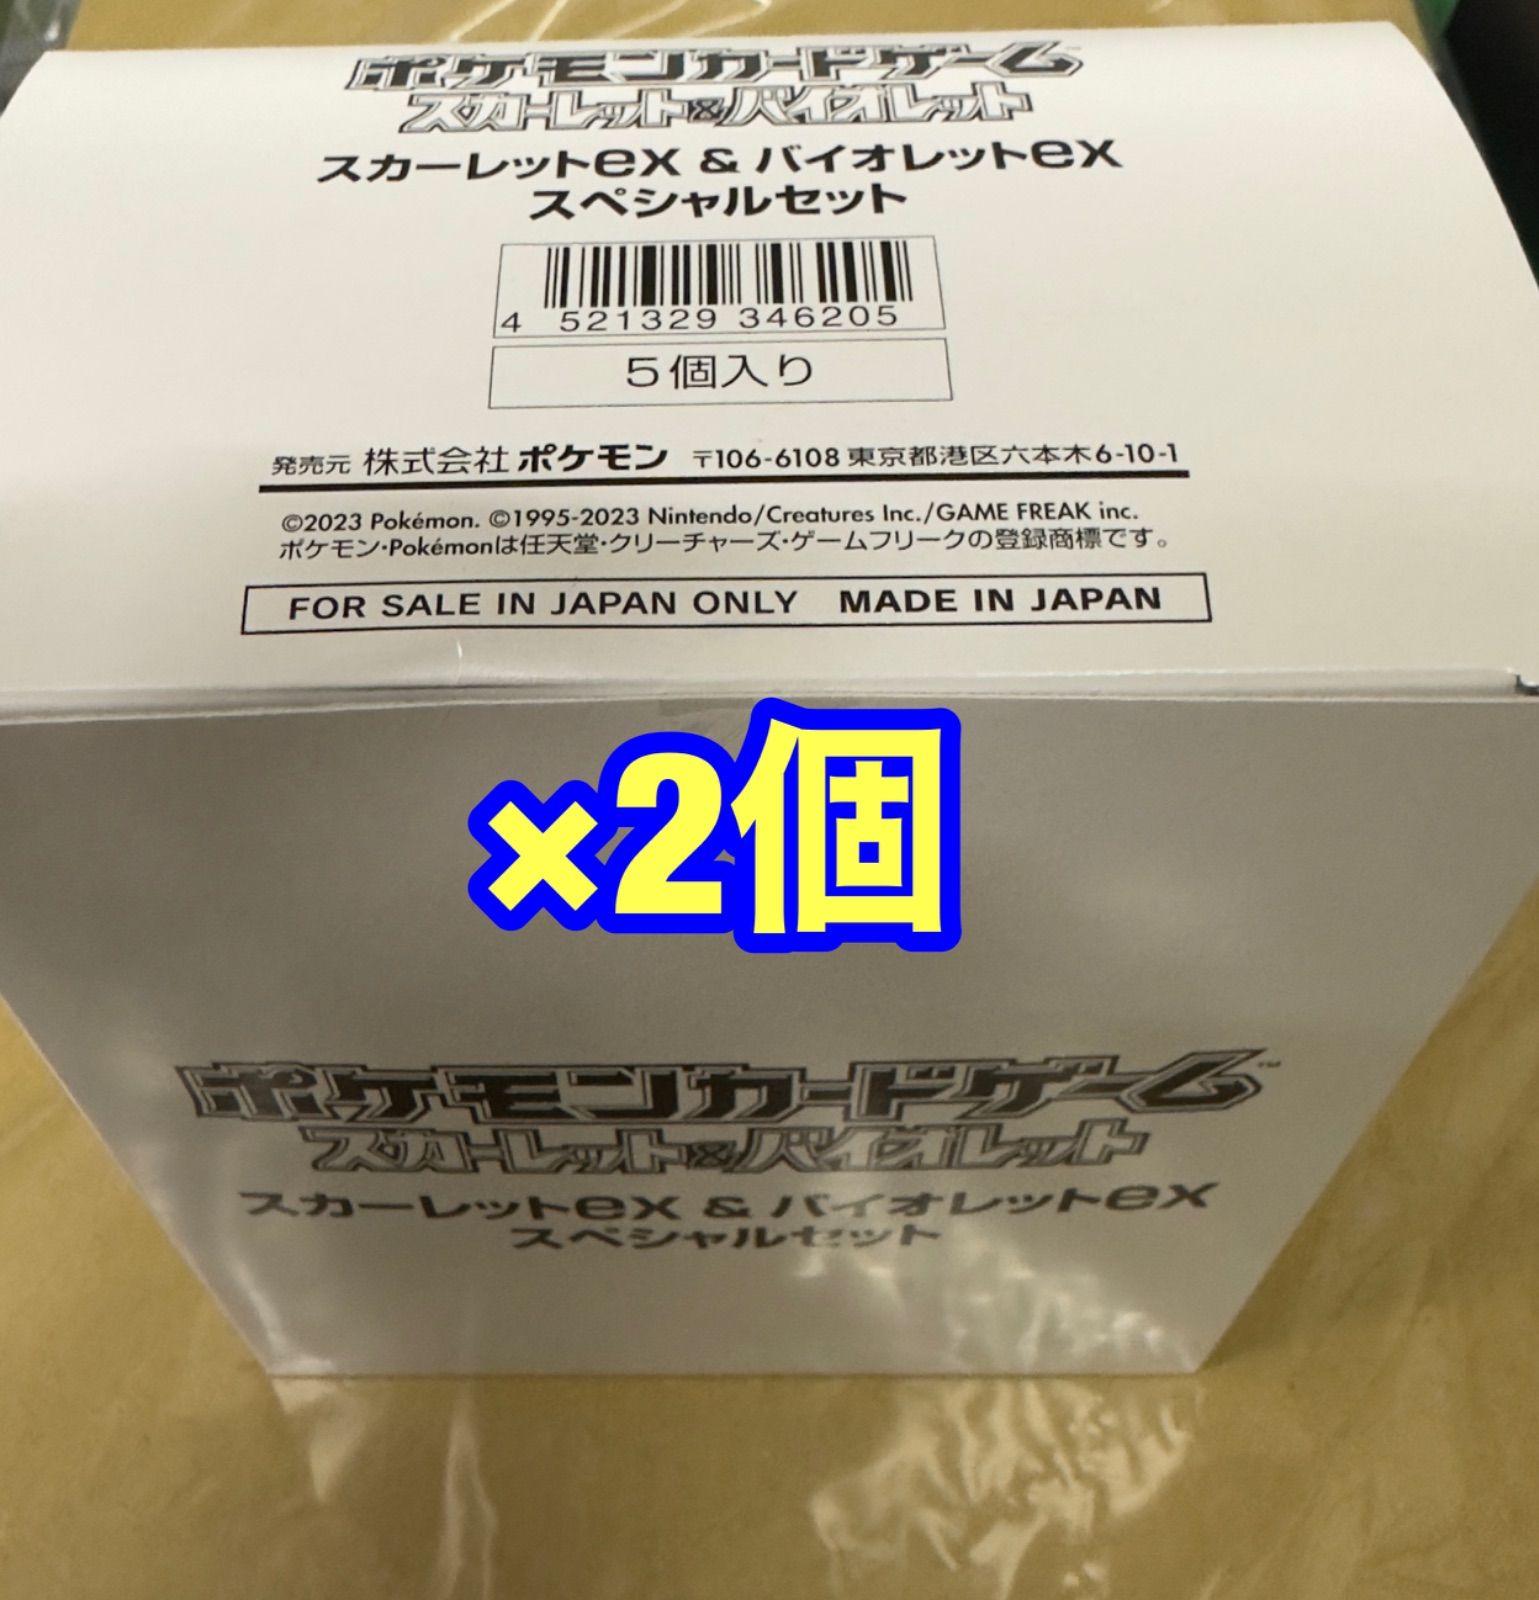 スカーレットex & バイオレットex スペシャルセット ×2個 - メルカリ